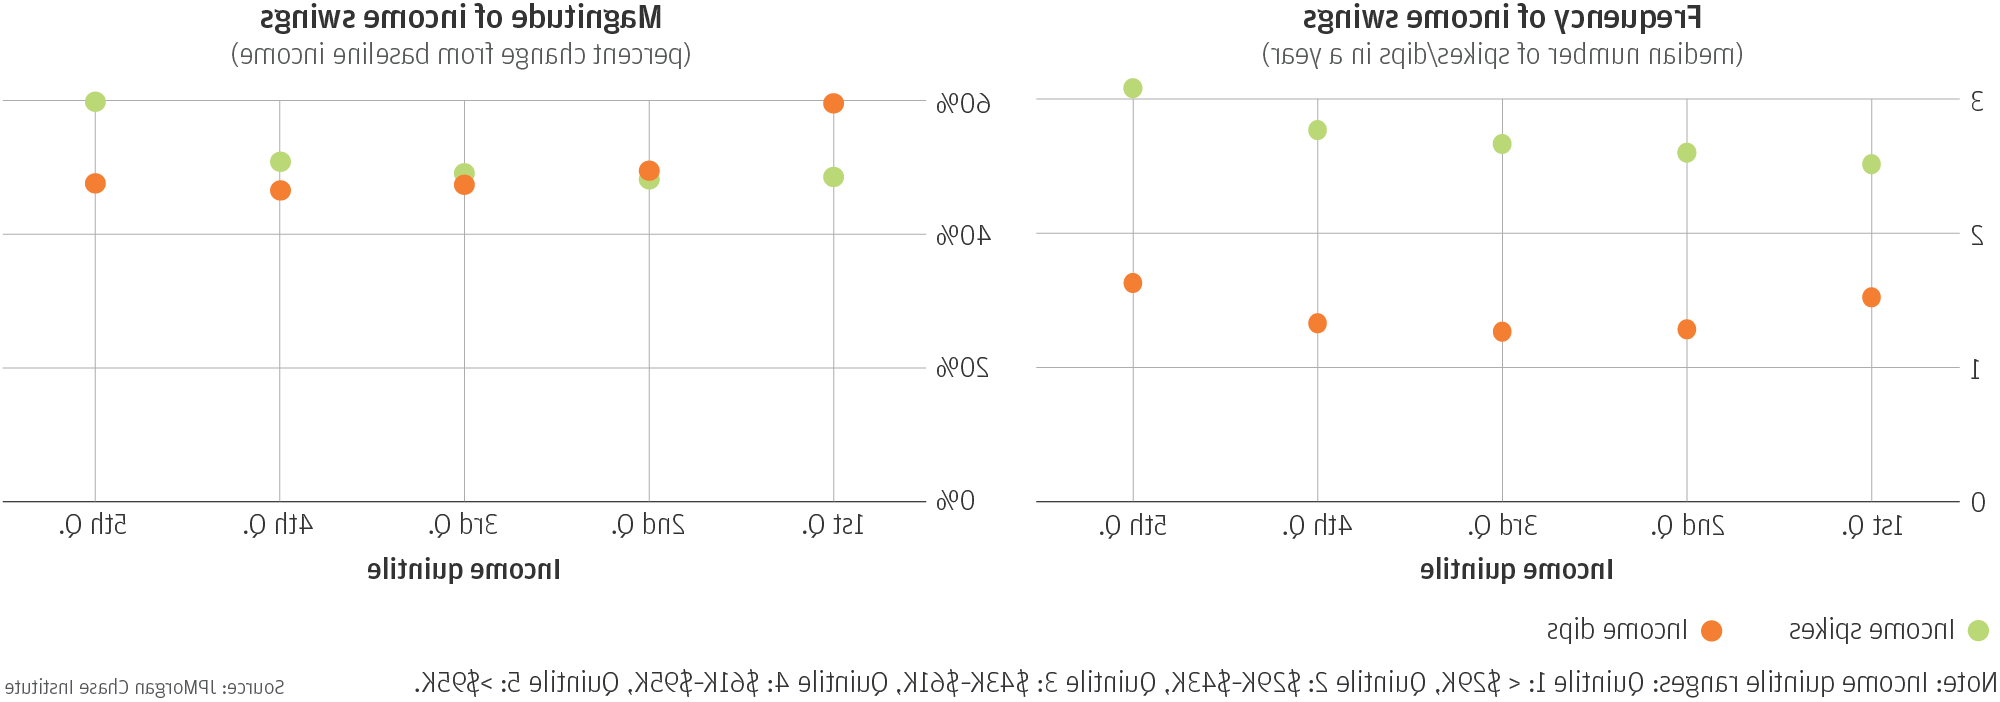 线图1描述了收入波动的频率(一年中峰值/低谷的中位数)，线图2描述了收入波动的幅度(与基线收入相比的百分比变化)。